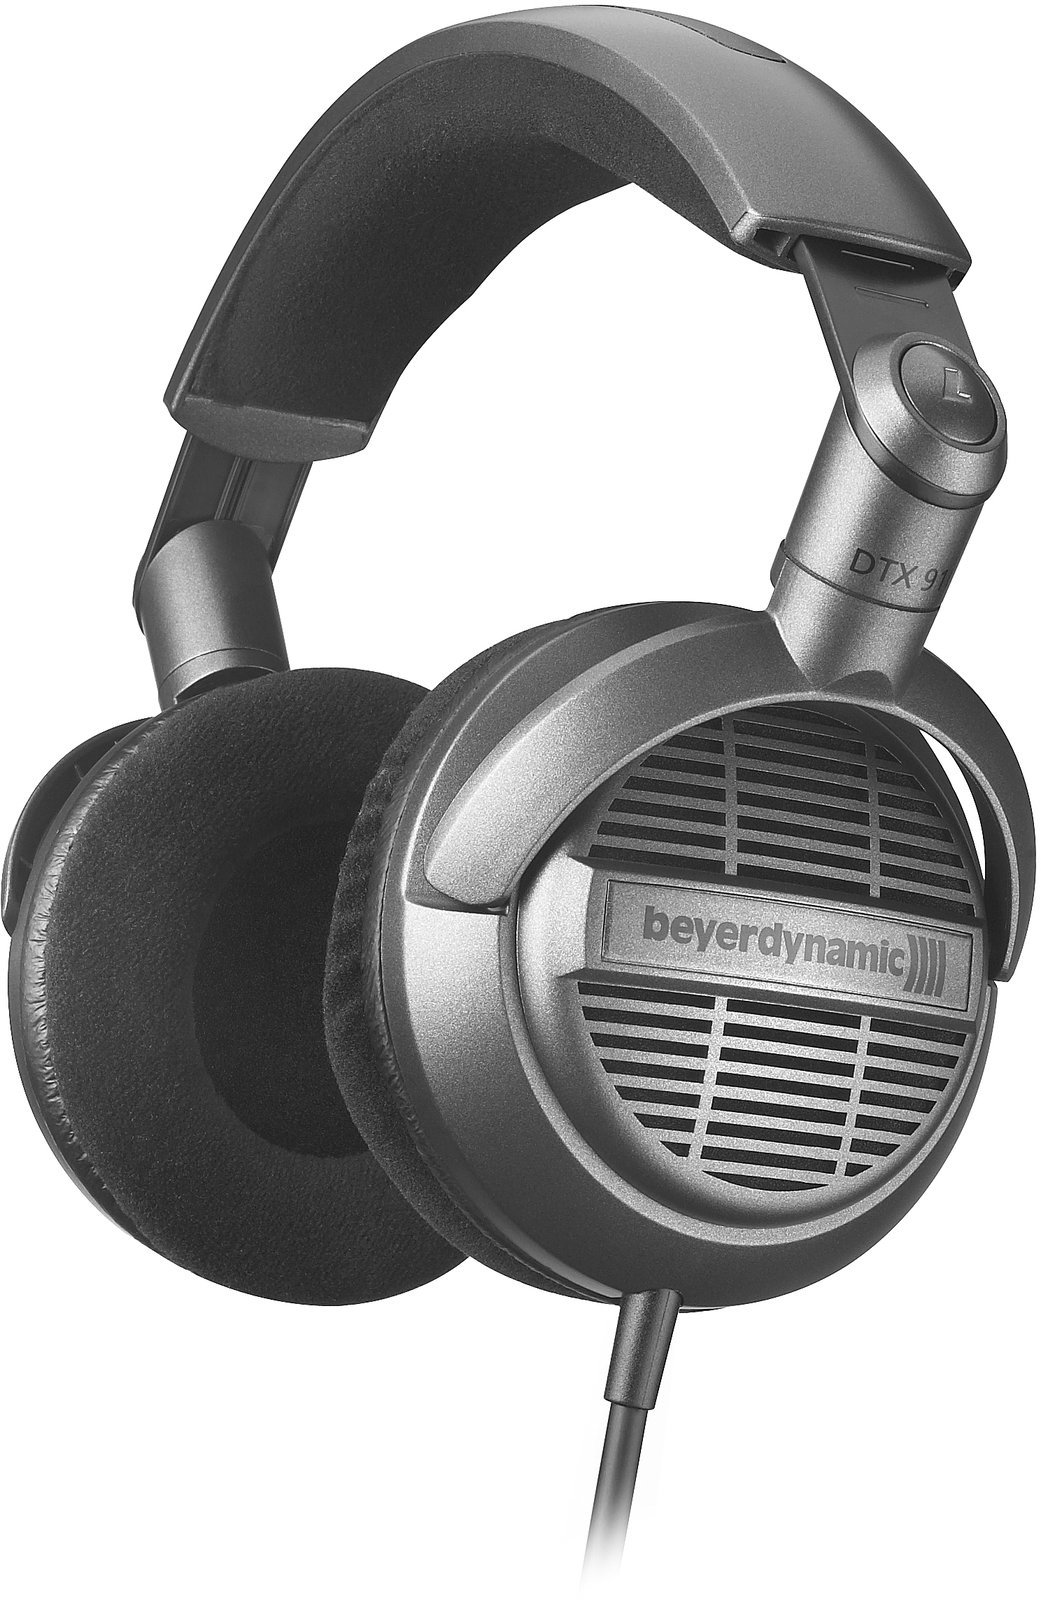 Studio-kuulokkeet Beyerdynamic DTX 910